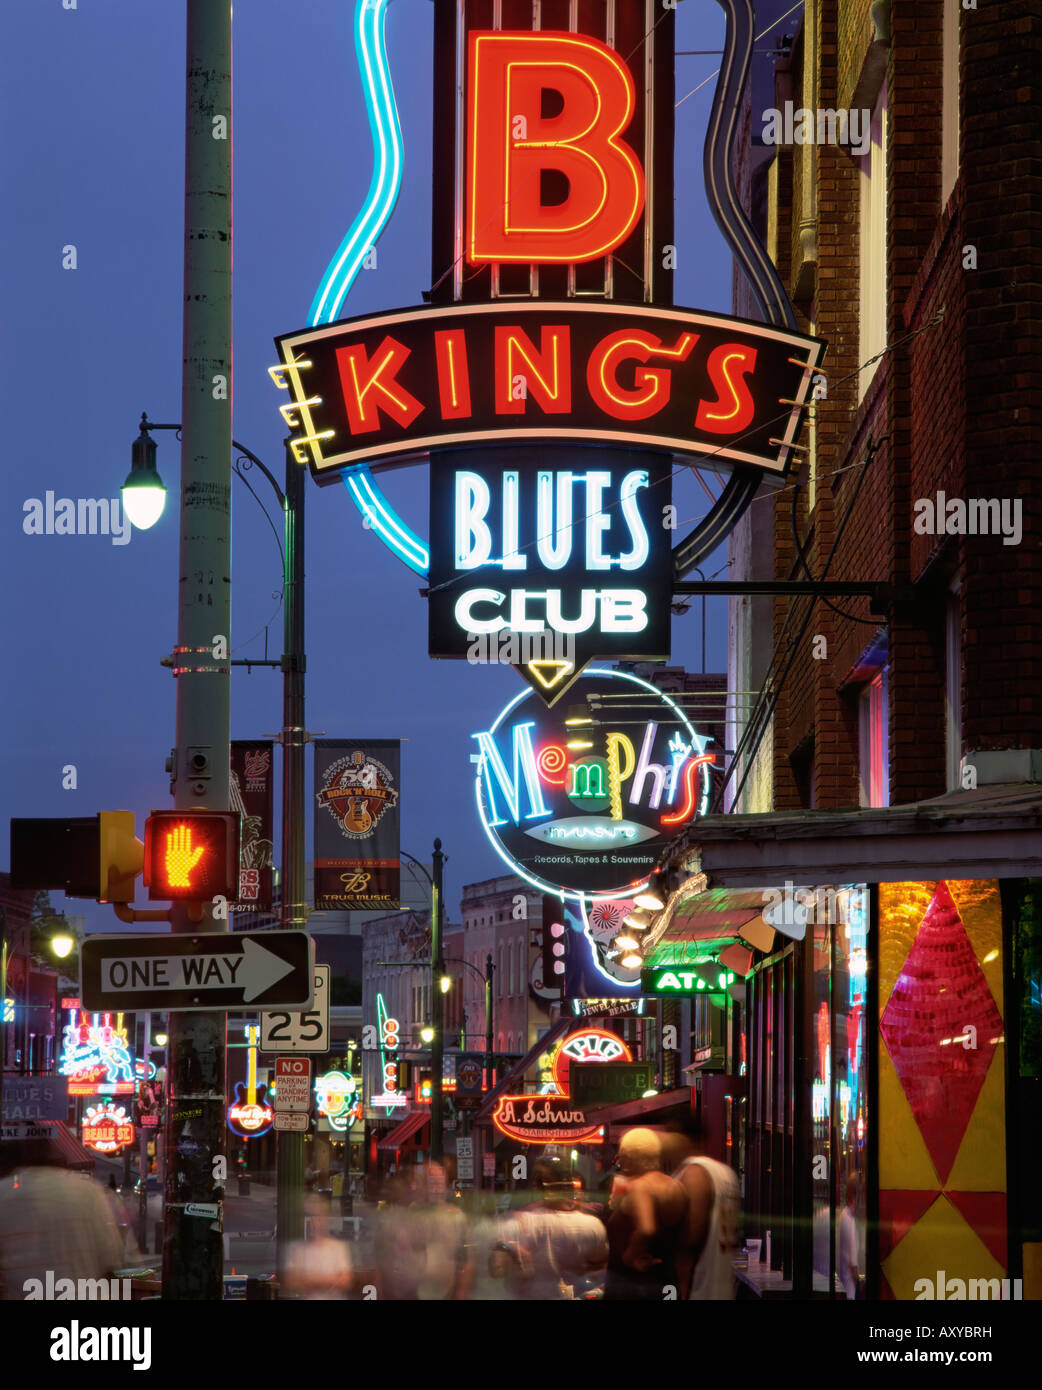 La célèbre Beale Street at night, Memphis, Tennessee, États-Unis d'Amérique, Amérique du Nord Banque D'Images